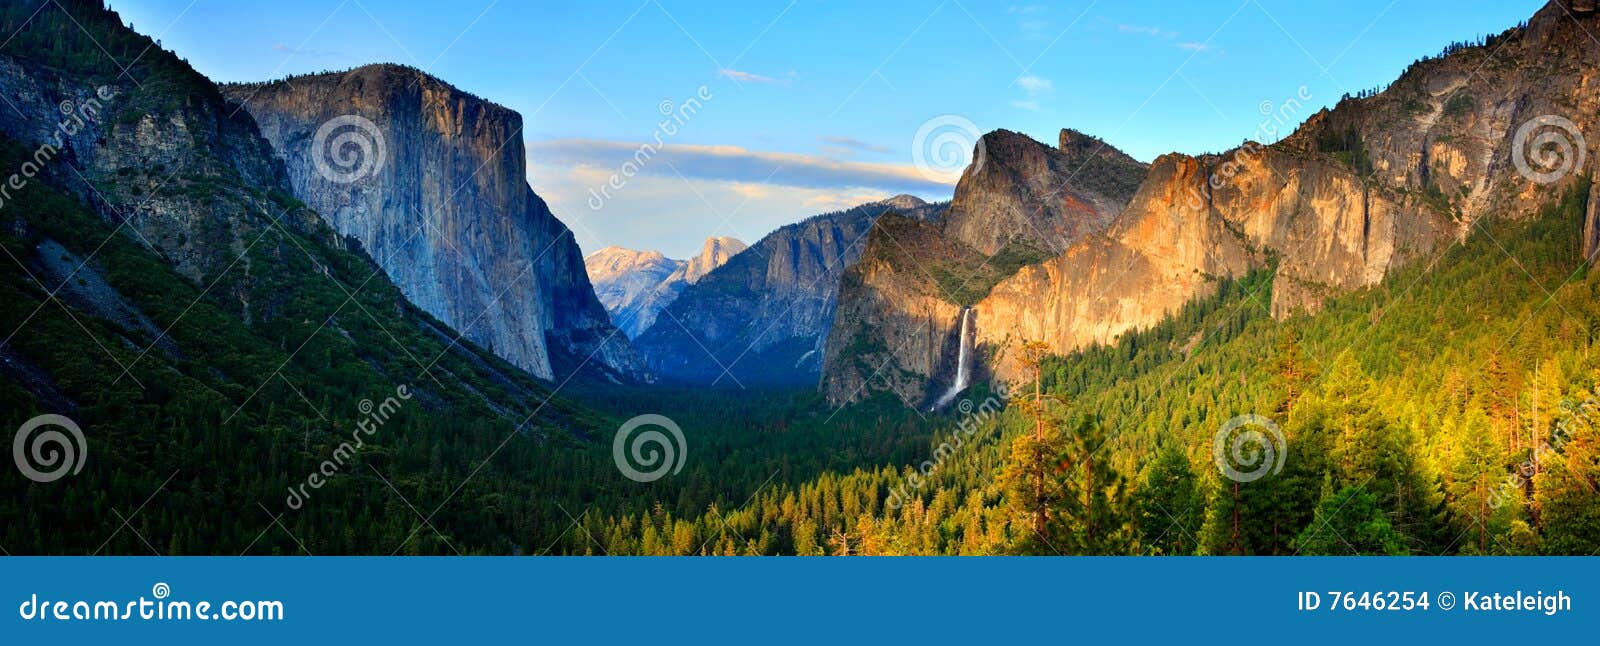 yosemite valley panorama